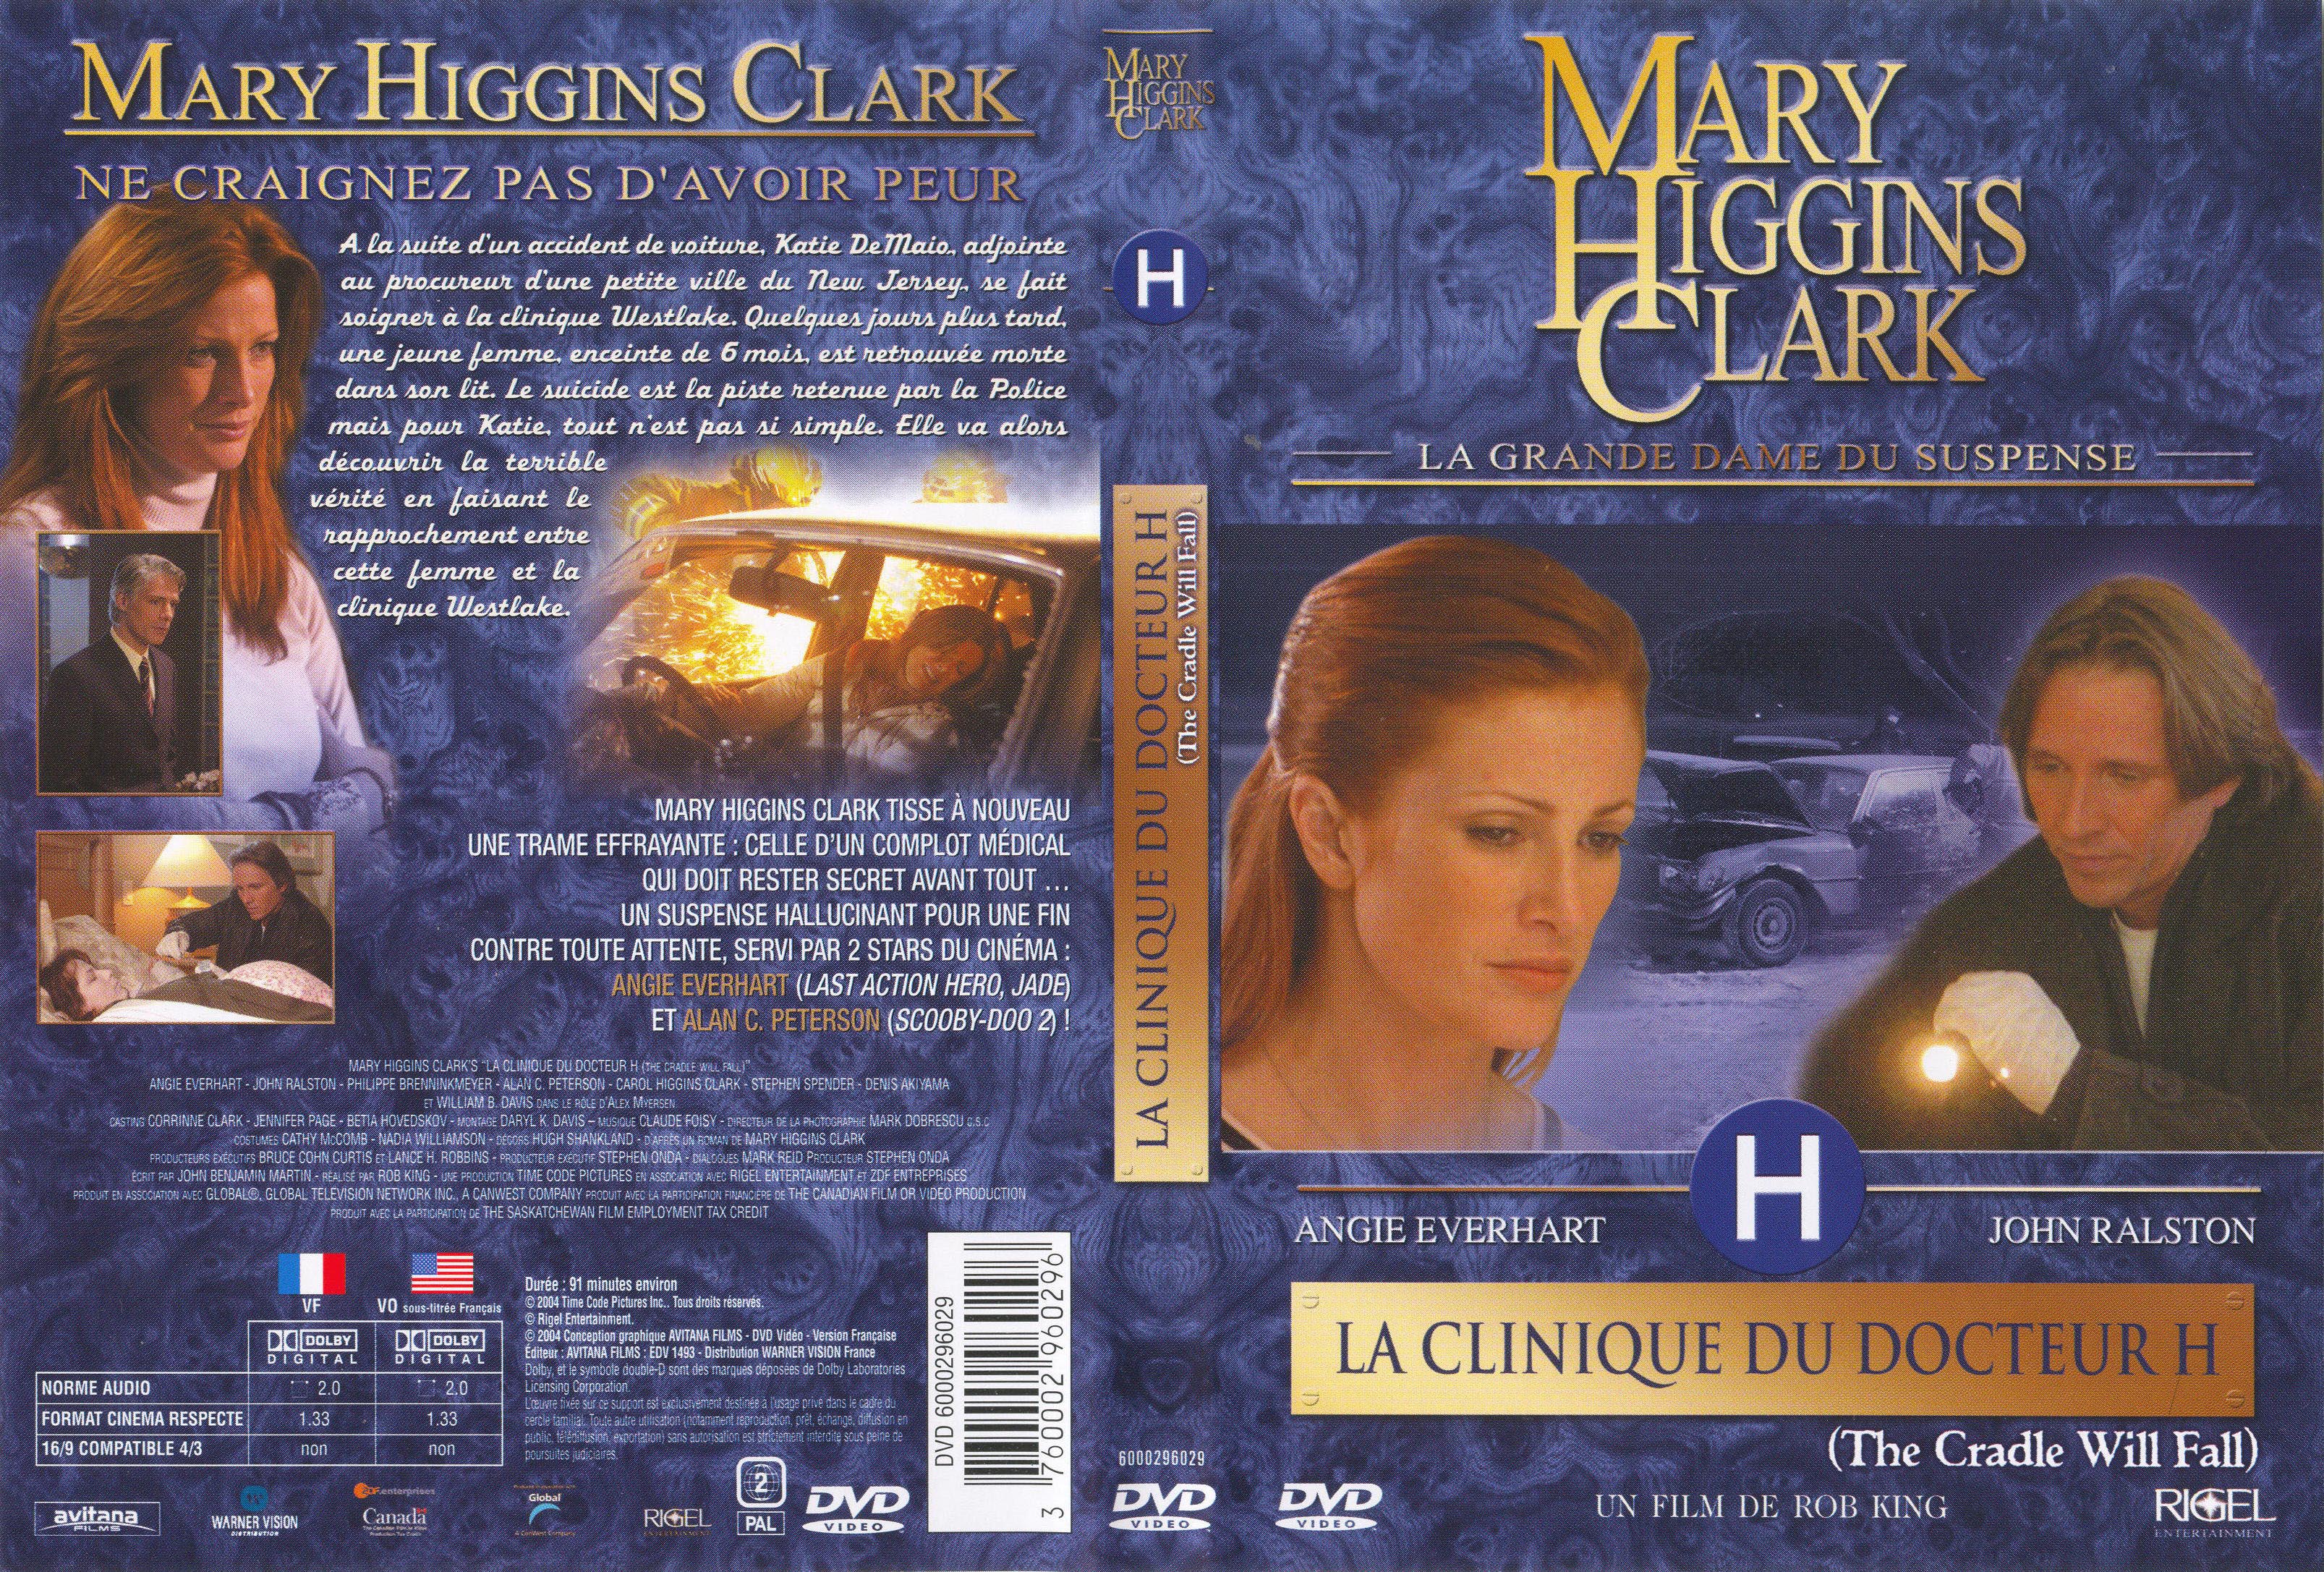 Jaquette DVD Mary Higgins Clark vol 10 - La clinique du docteur H v2